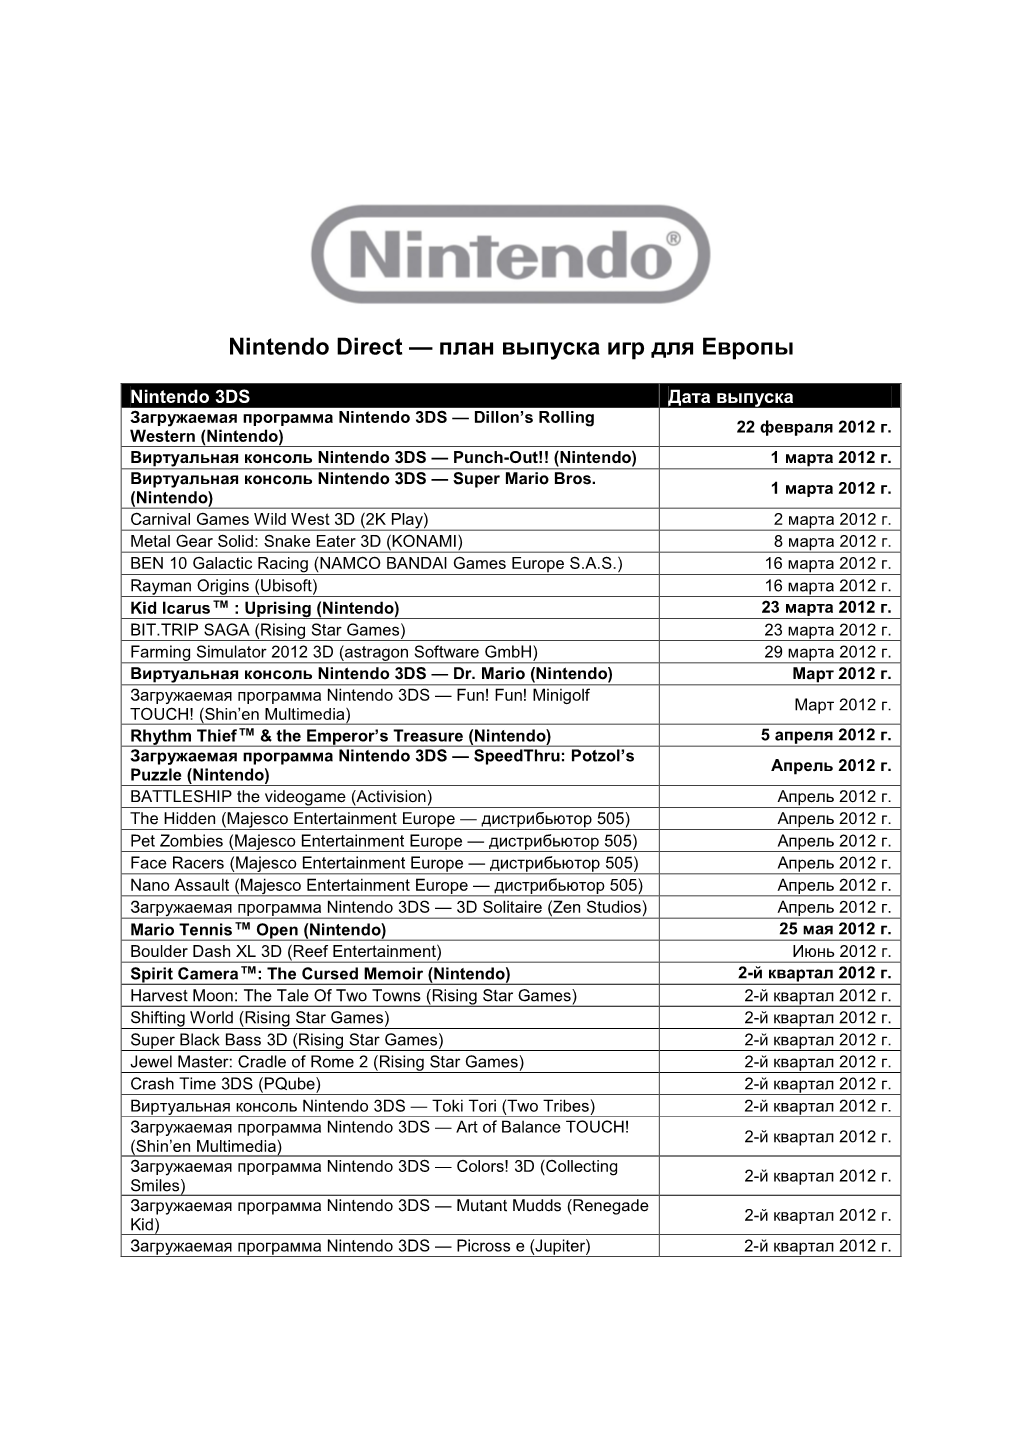 Nintendo Direct Schedule FINAL RUS